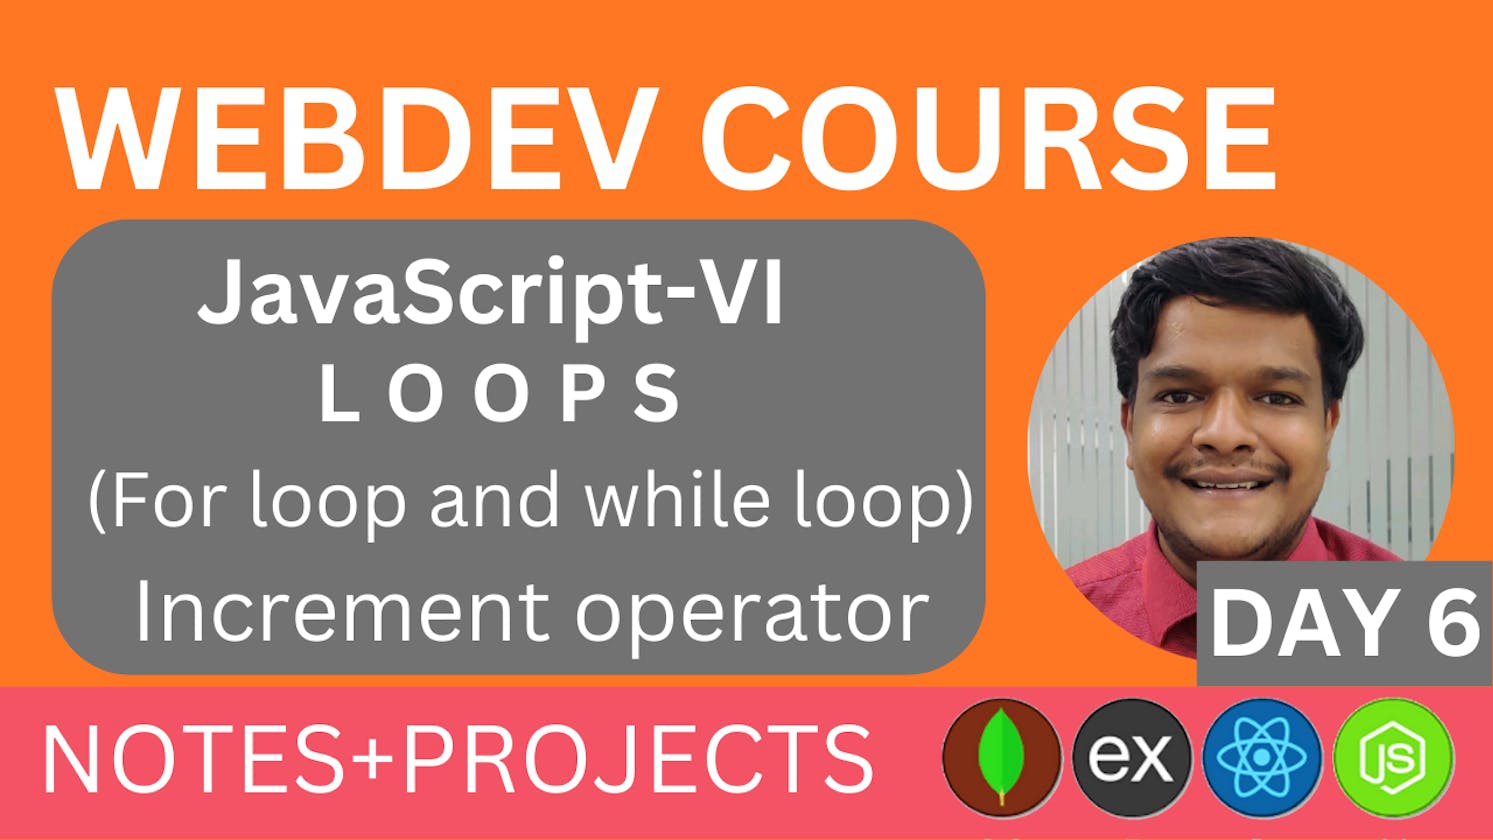 JavaScript Loops (for Loop and while Loop) increment operator, WEBDEV Course by Nakul Goel, Day 6